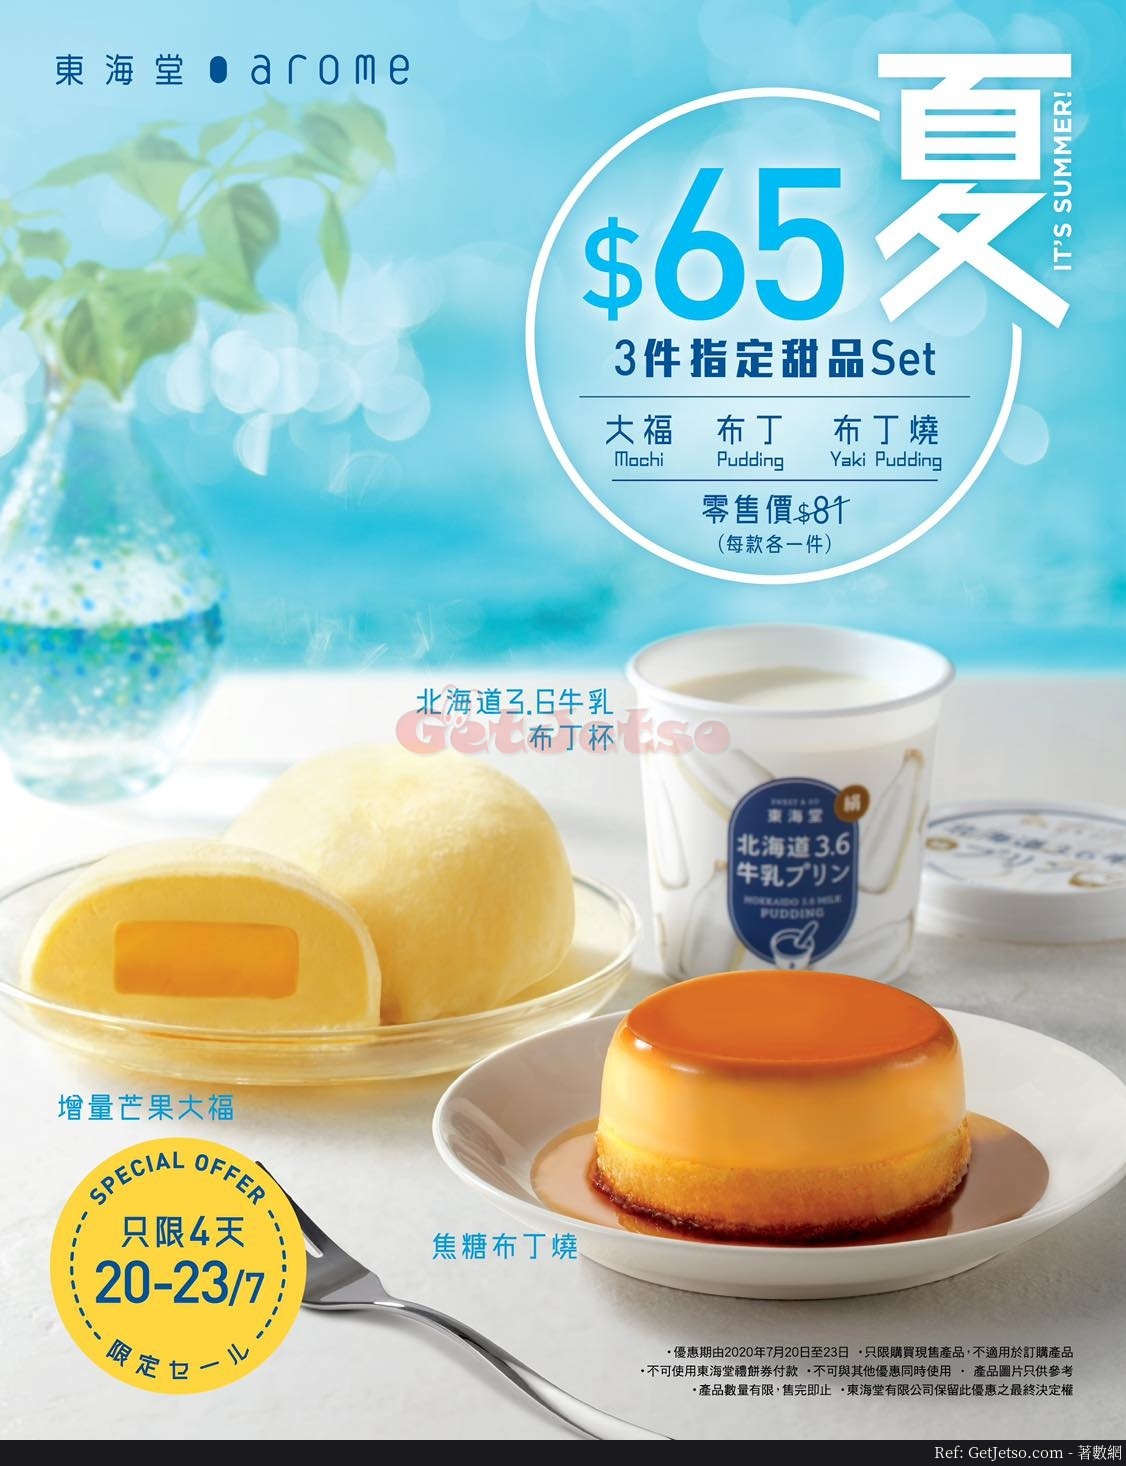 東海堂購買指定3件的甜品優惠(20年7月20-23日)圖片1